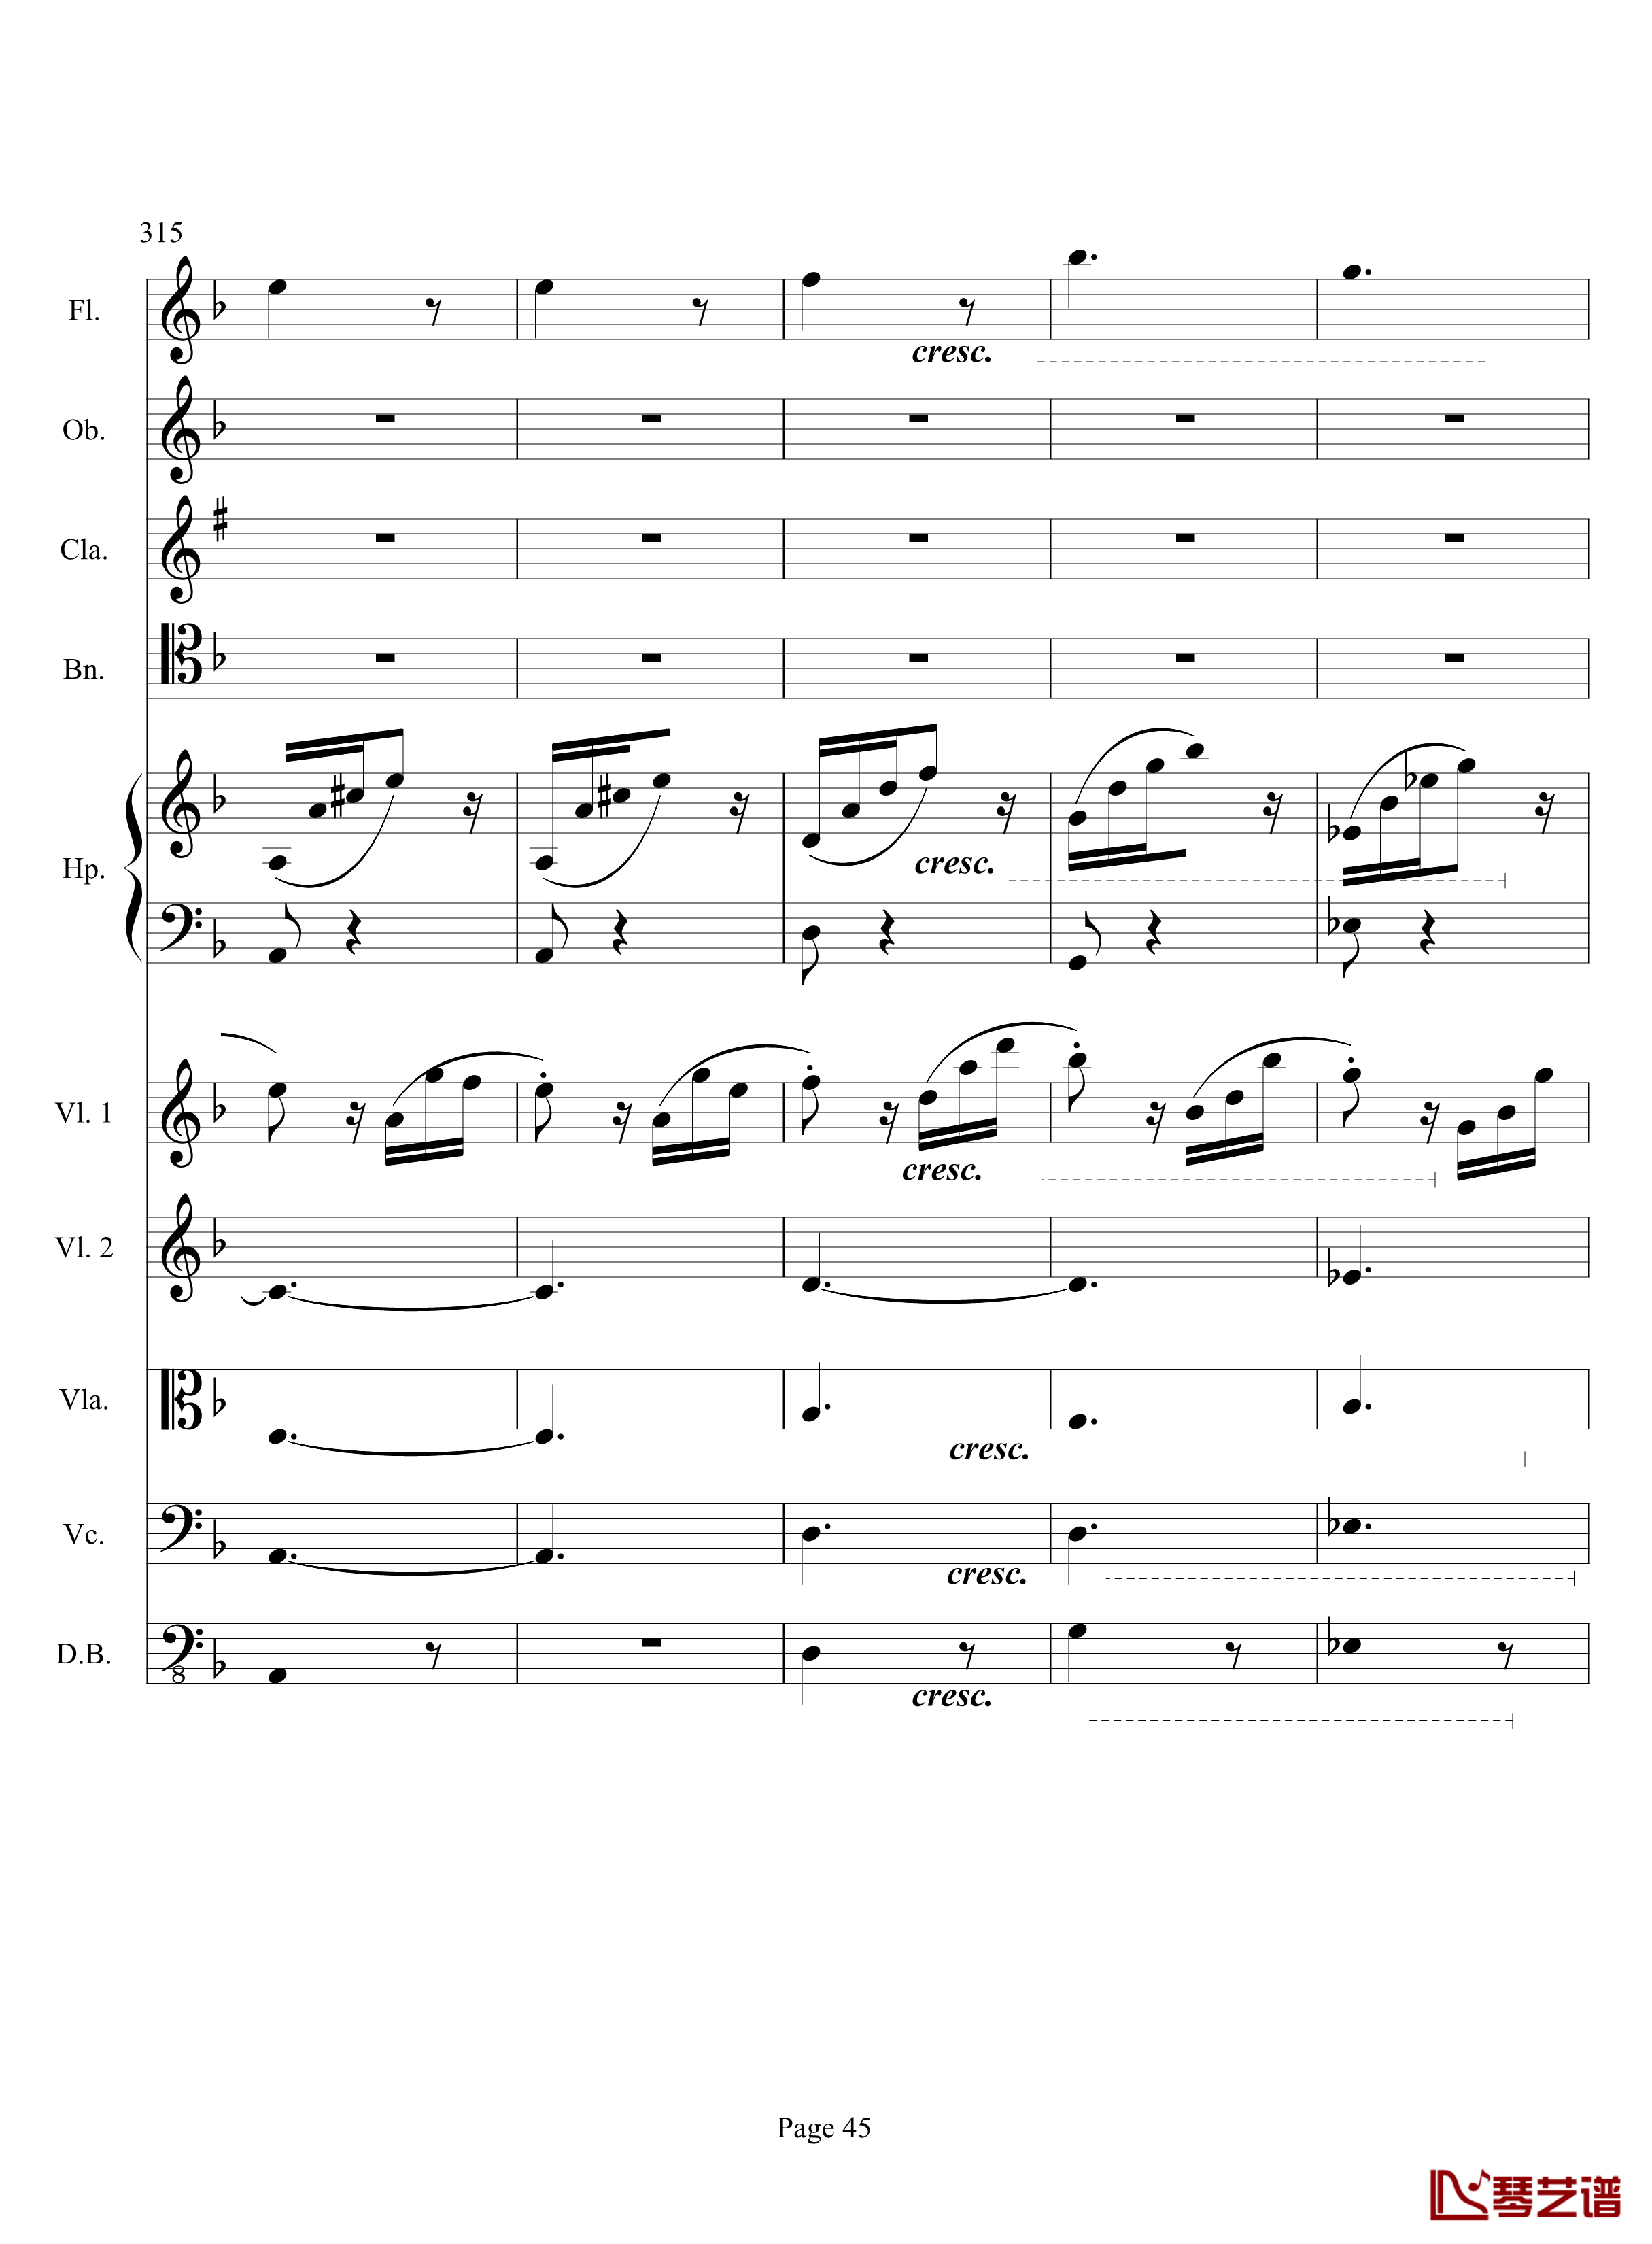 奏鸣曲之交响钢琴谱-第17首-Ⅲ-贝多芬-beethoven45